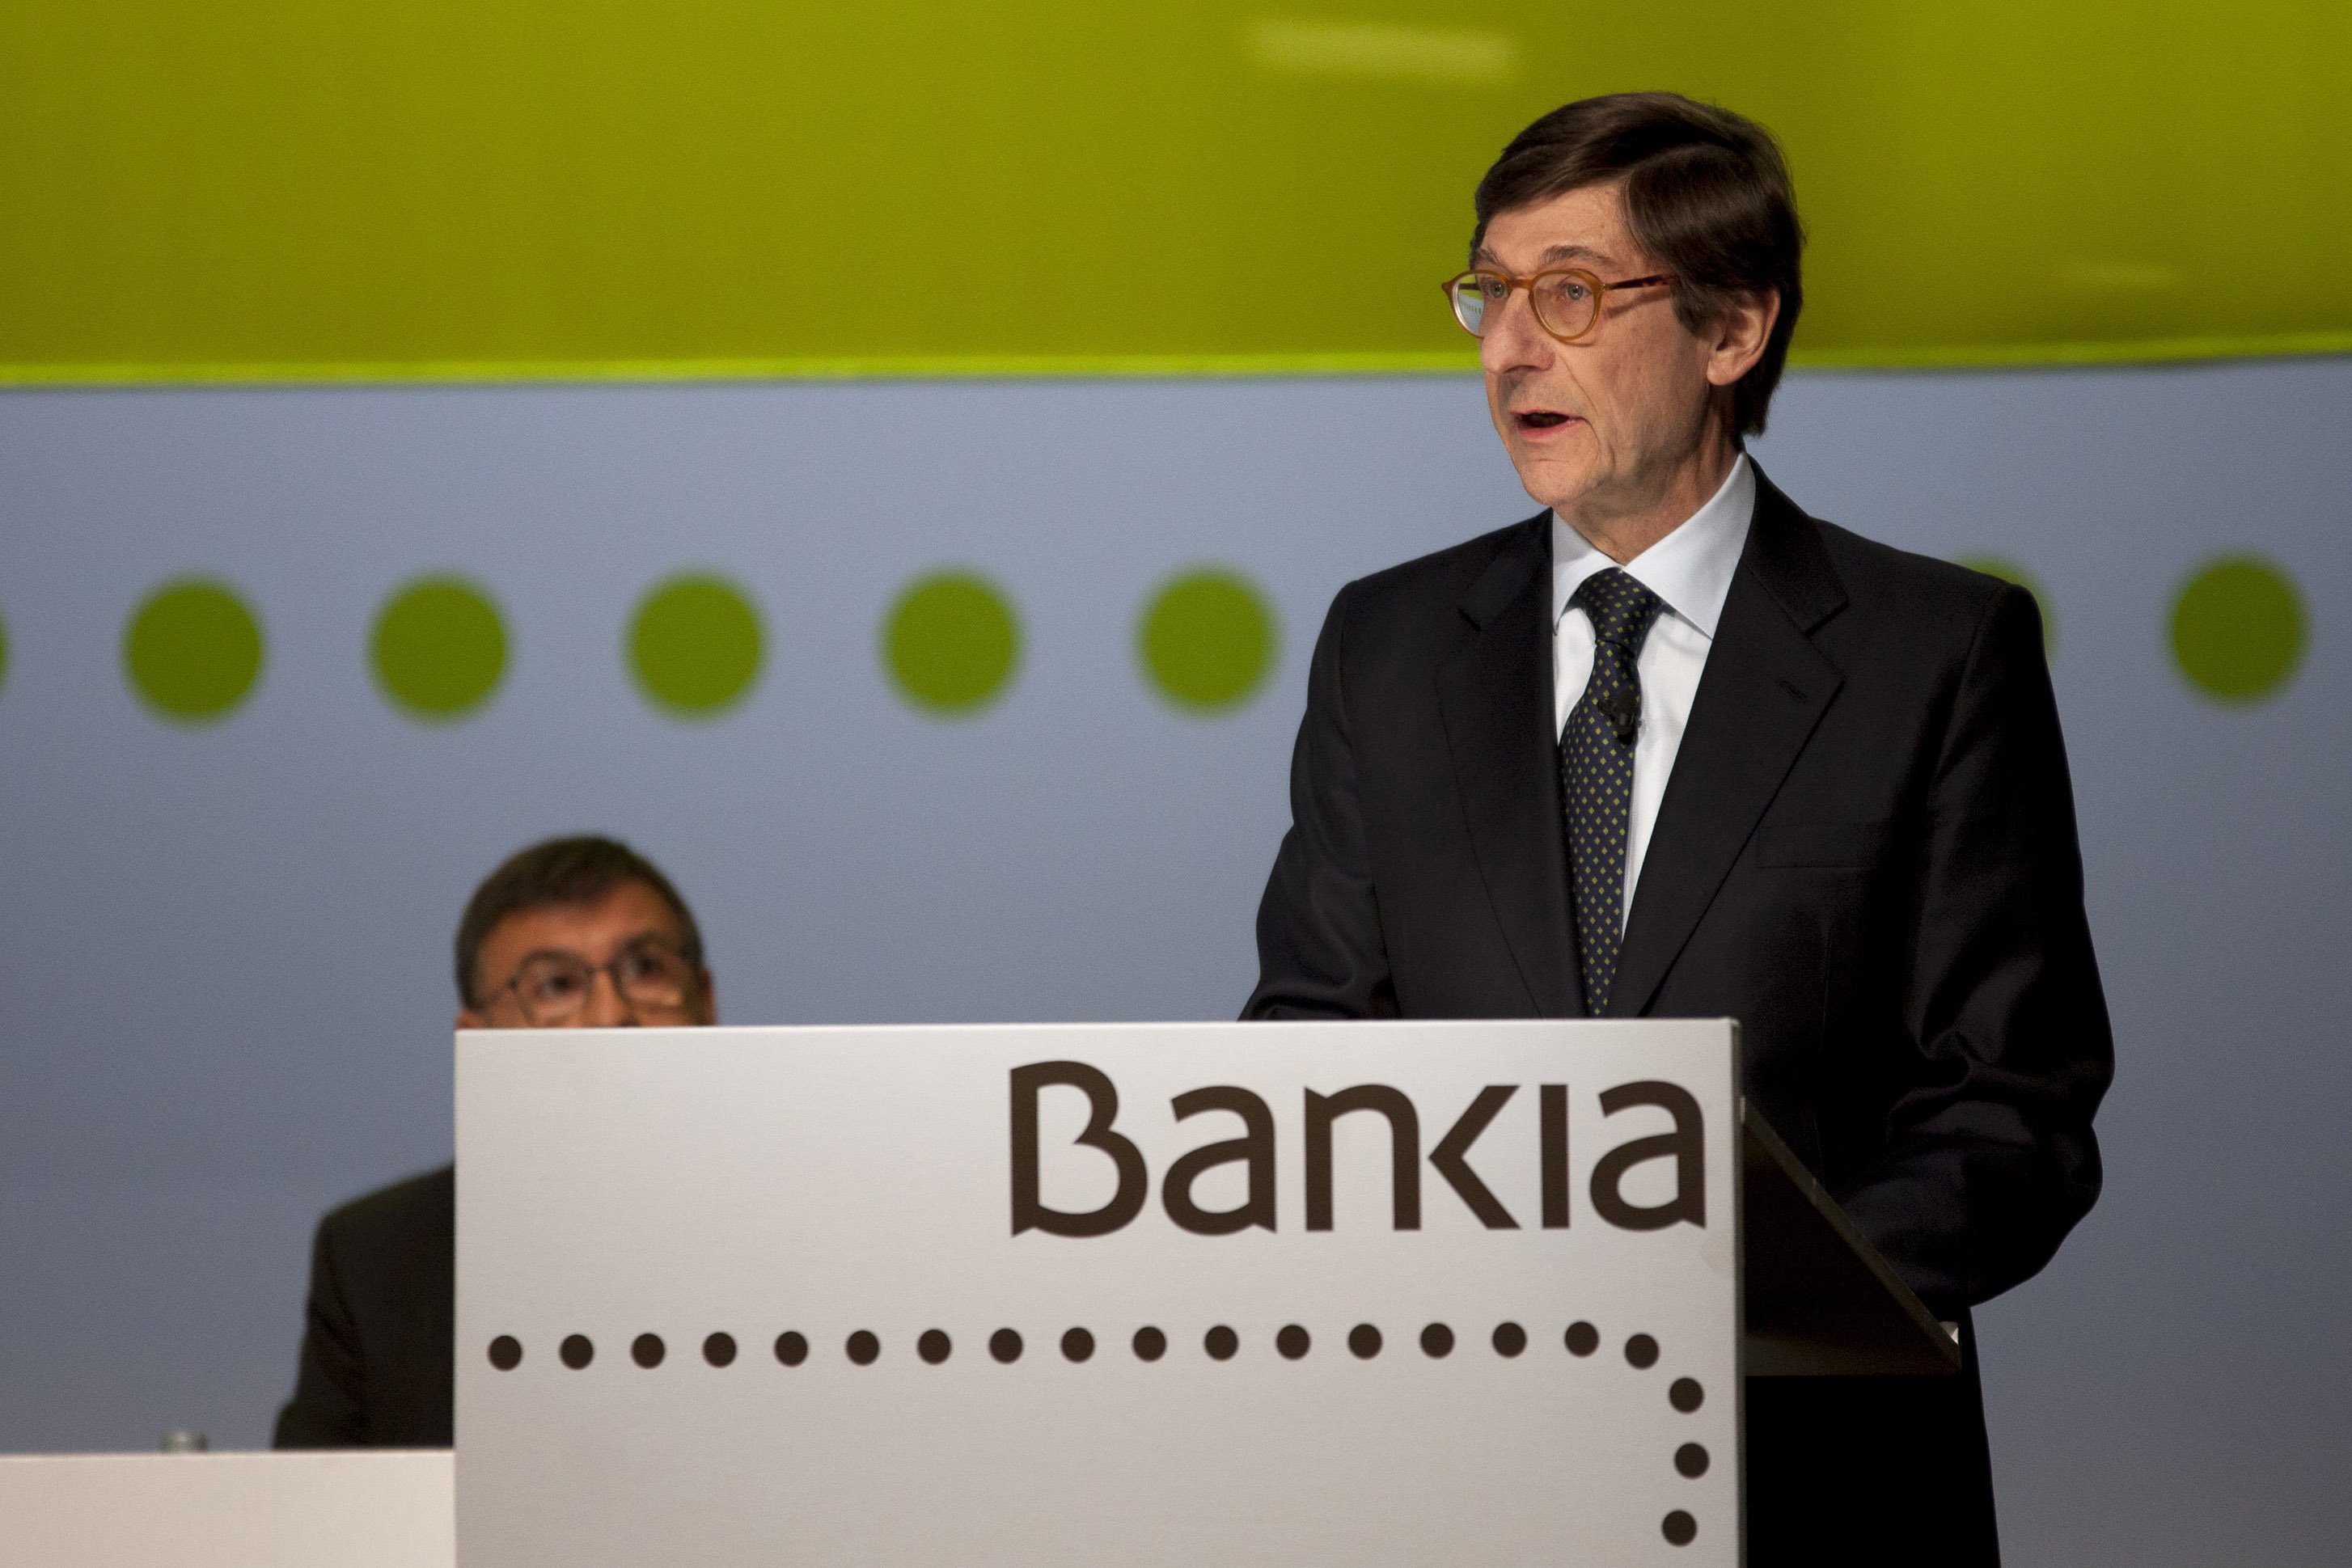 Bankia inicia una etapa de crecimiento por ser "el mejor banco de España" en el 2020